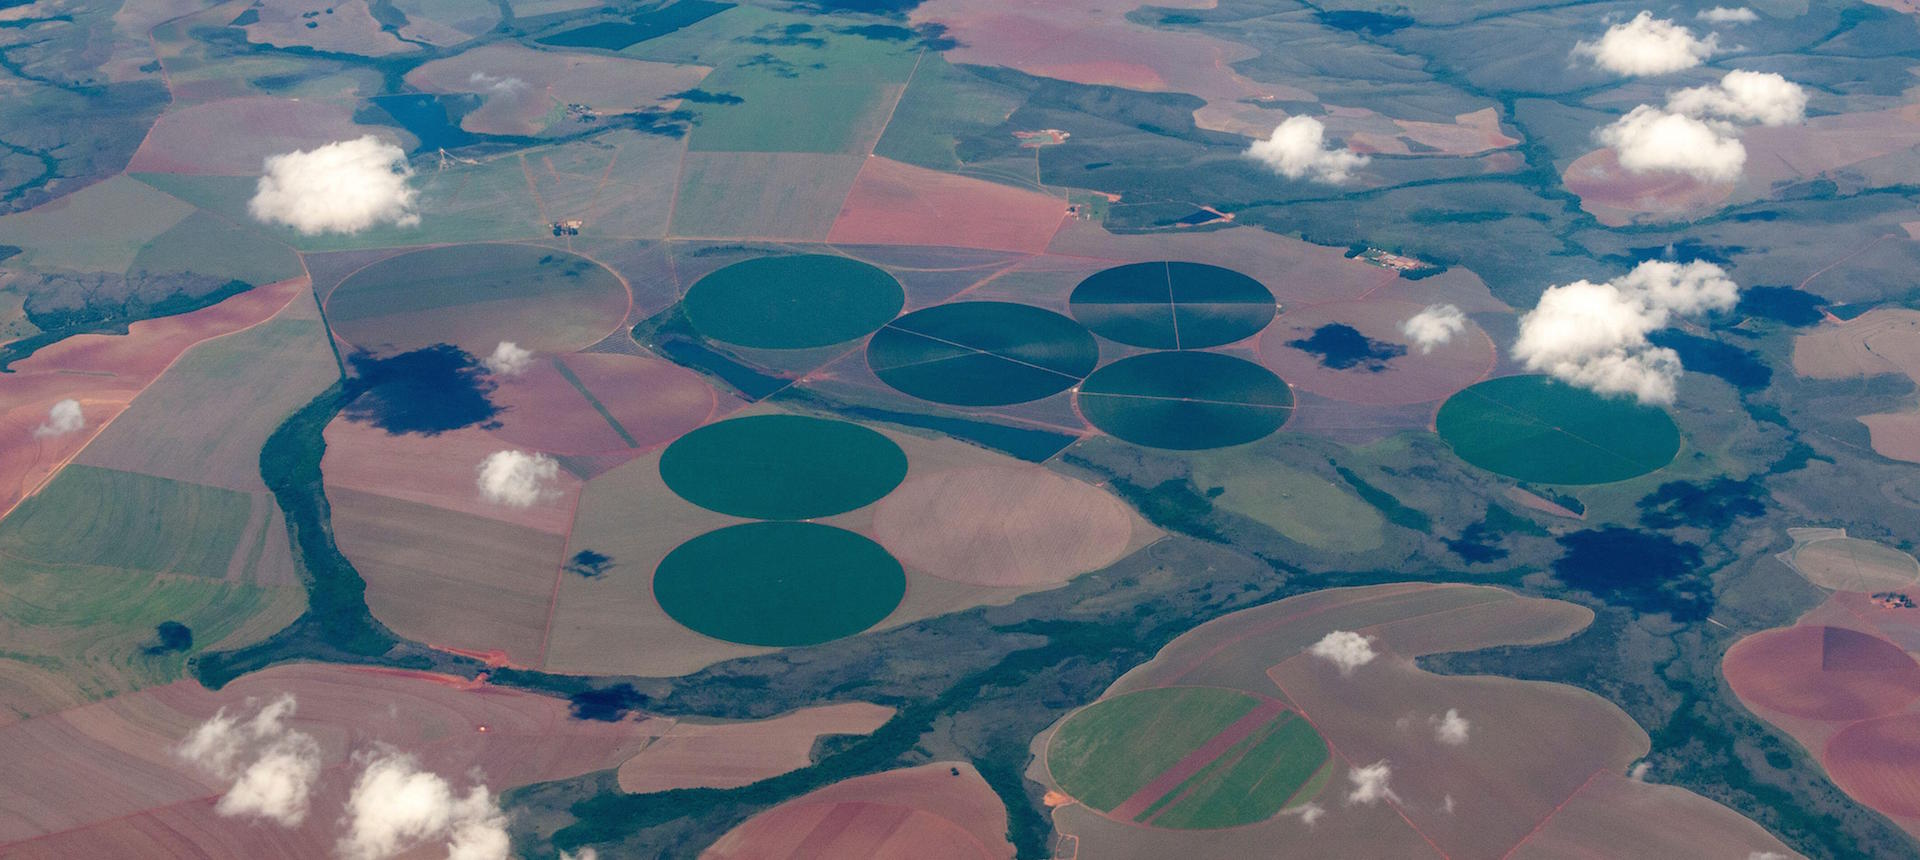 Vista aérea de plantaciones de soja en la sabana del Cerrado de Brasil